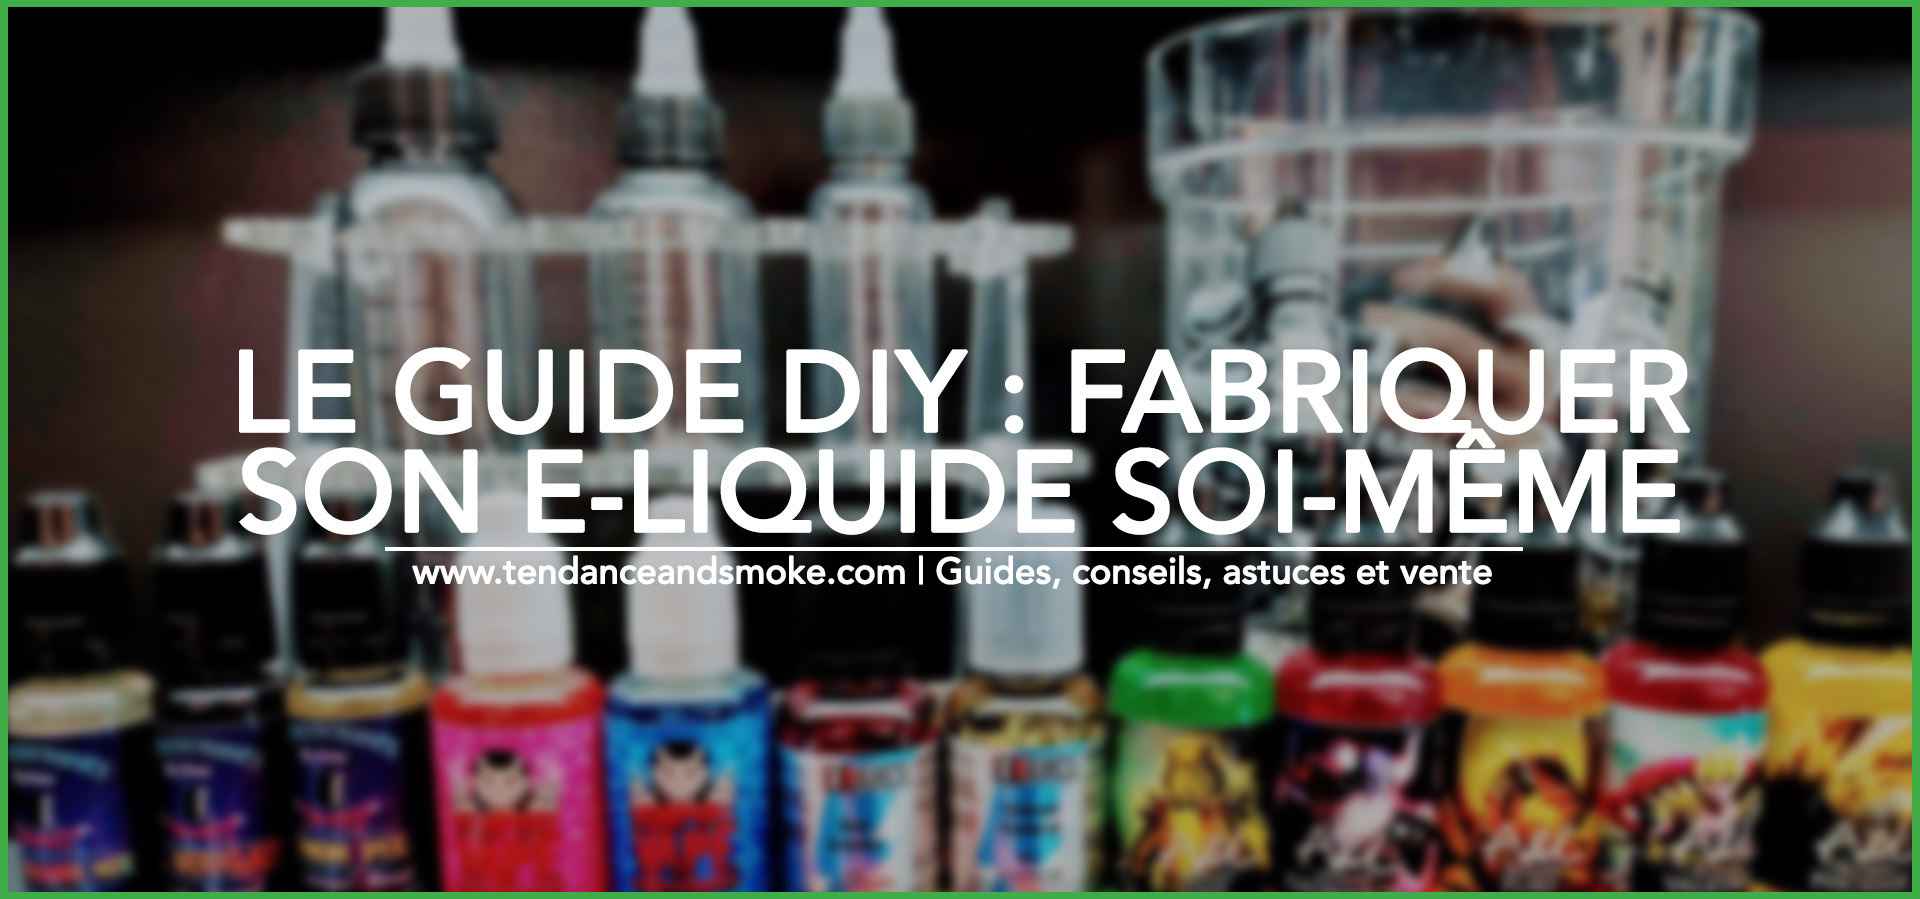 Le guide DIY : fabriquer son e-liquide soi-même